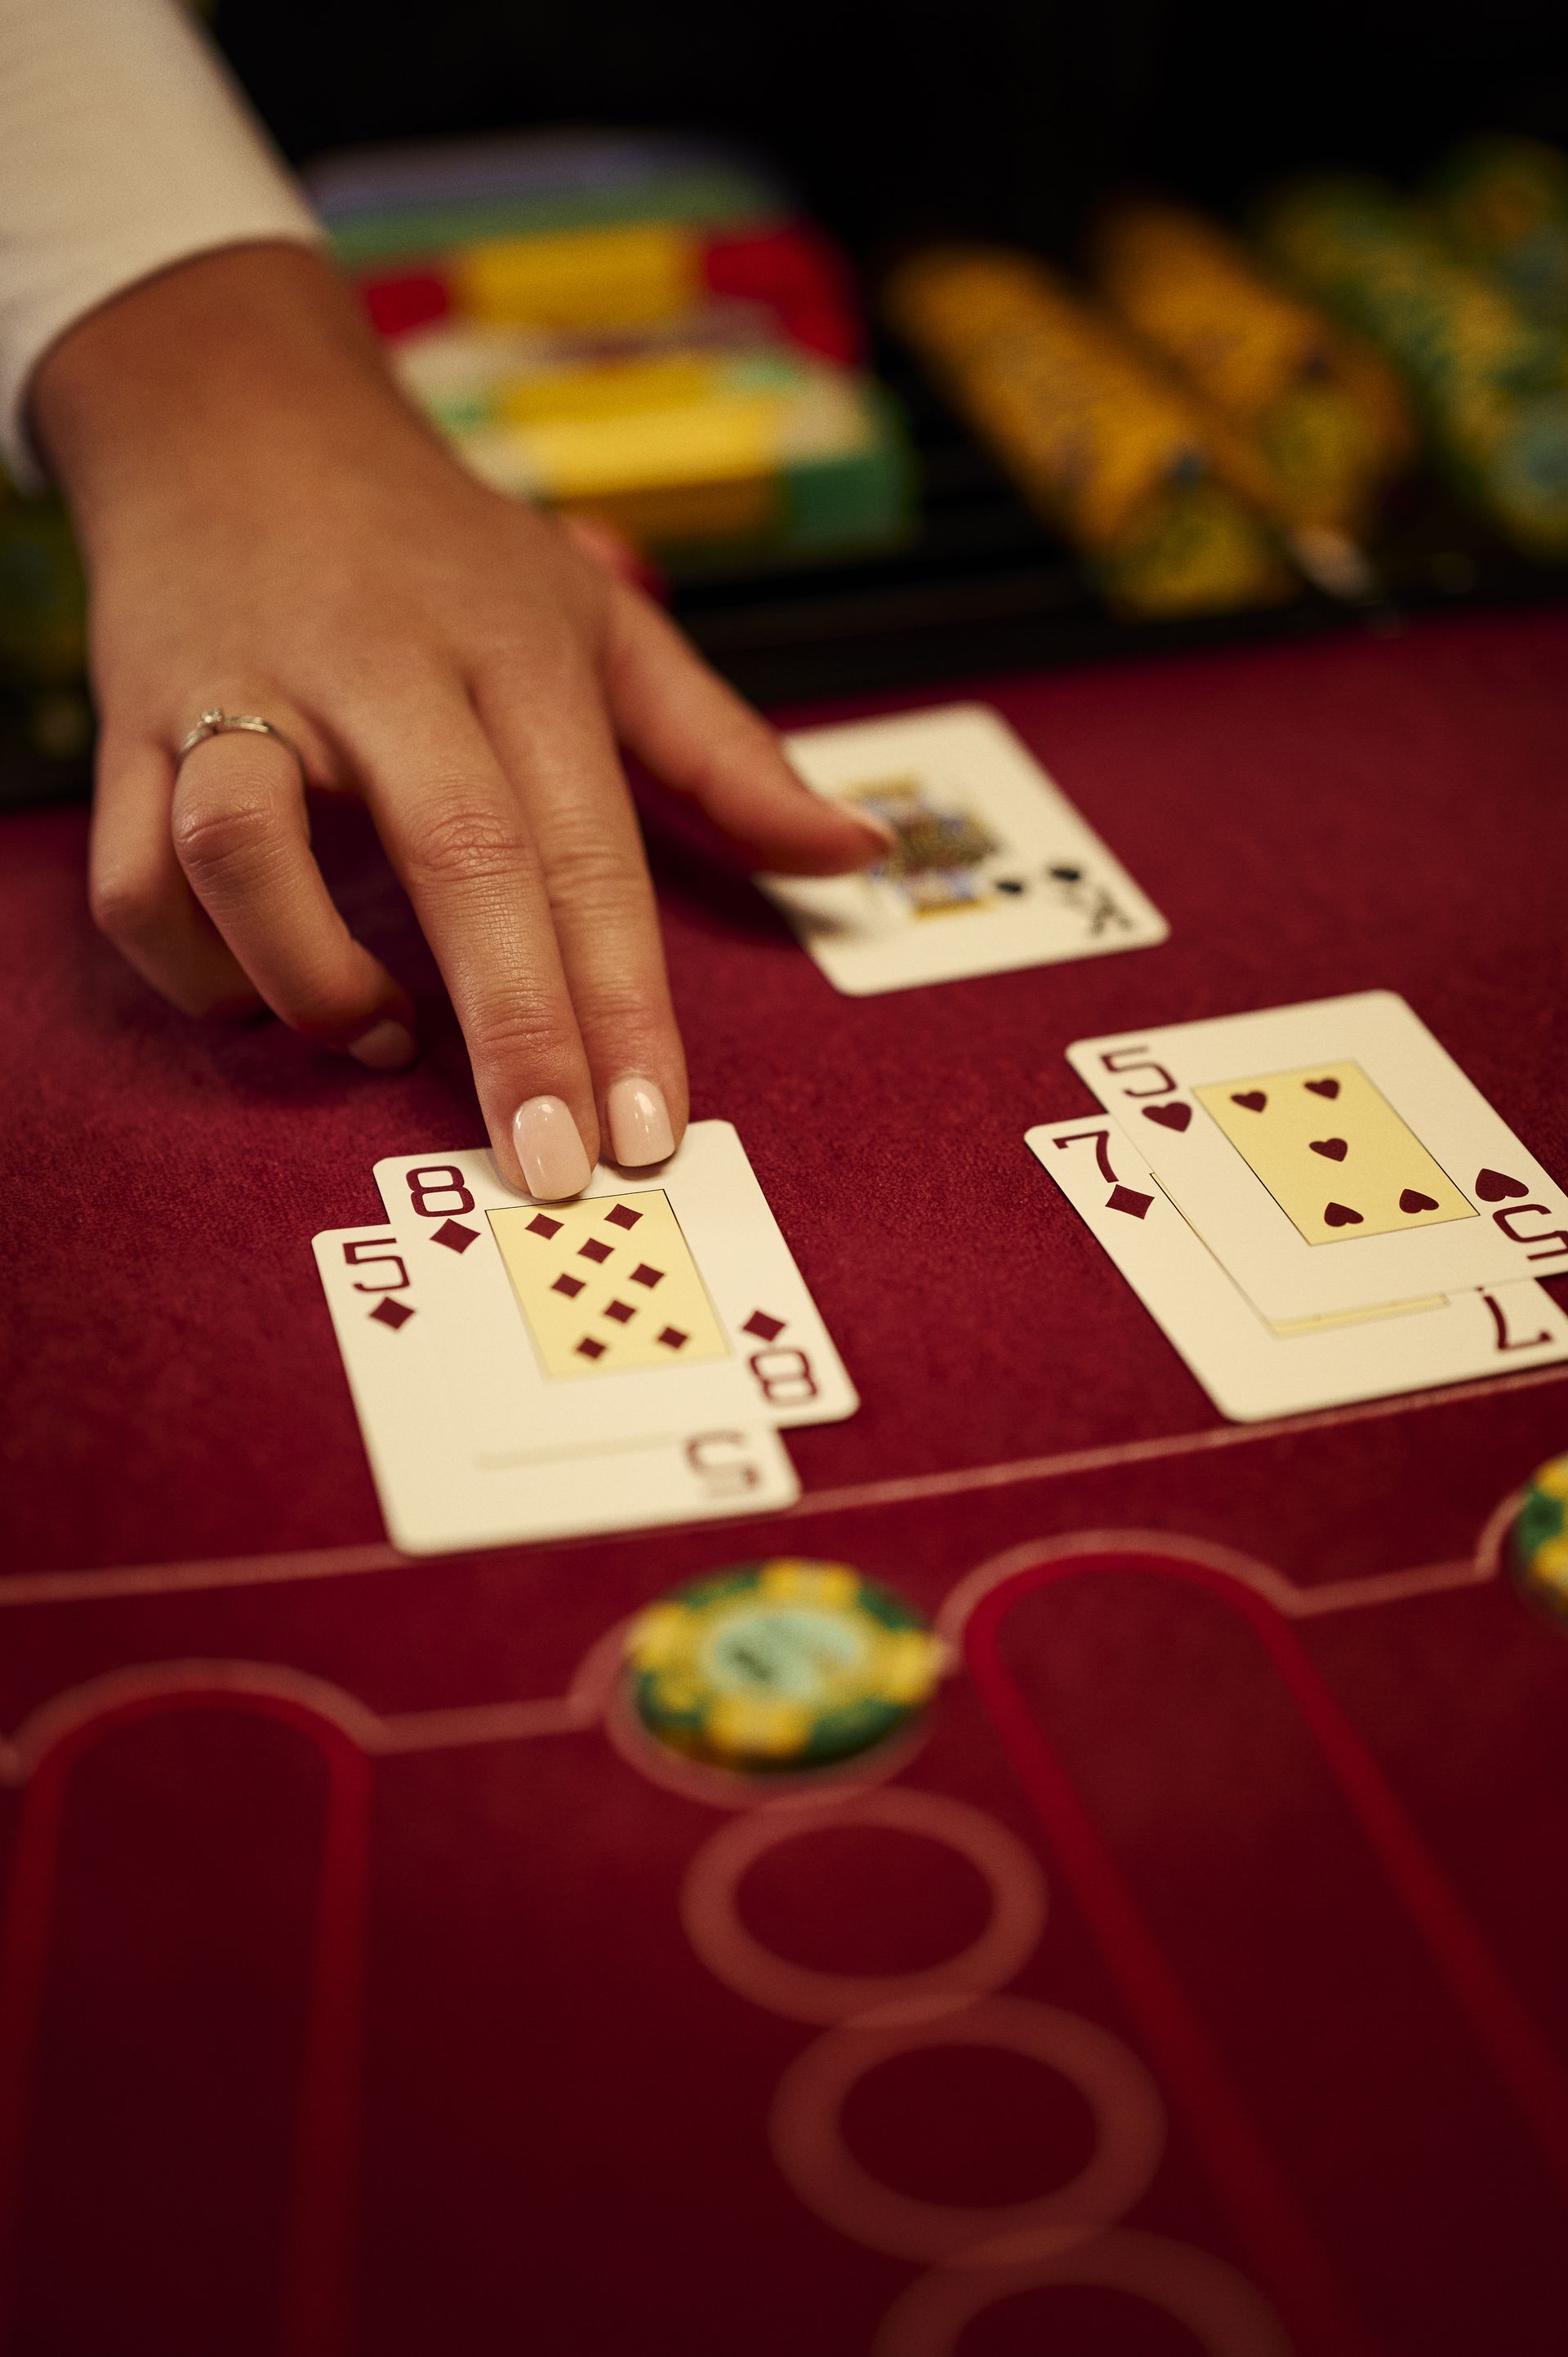 holland-casino-blackjack-close-up-hand-croupier-met-speelkaarten-set-vijf-en-acht-en-set-zeven-en-vijf